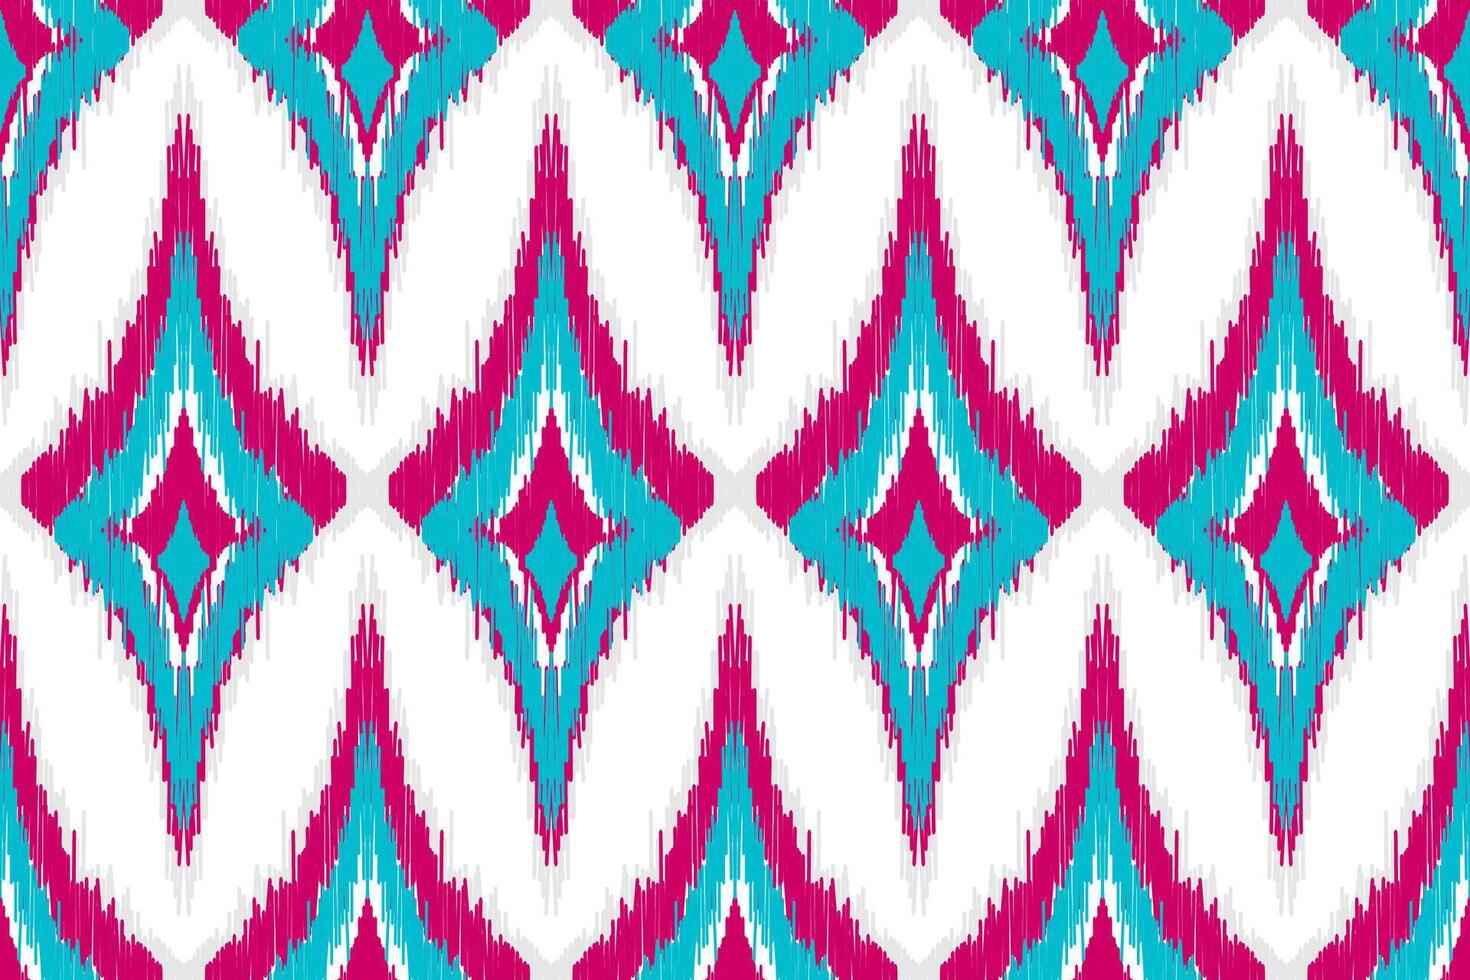 tela etnica ikat art. patrón sin costuras en tribal. estampado de adornos geométricos aztecas. vector